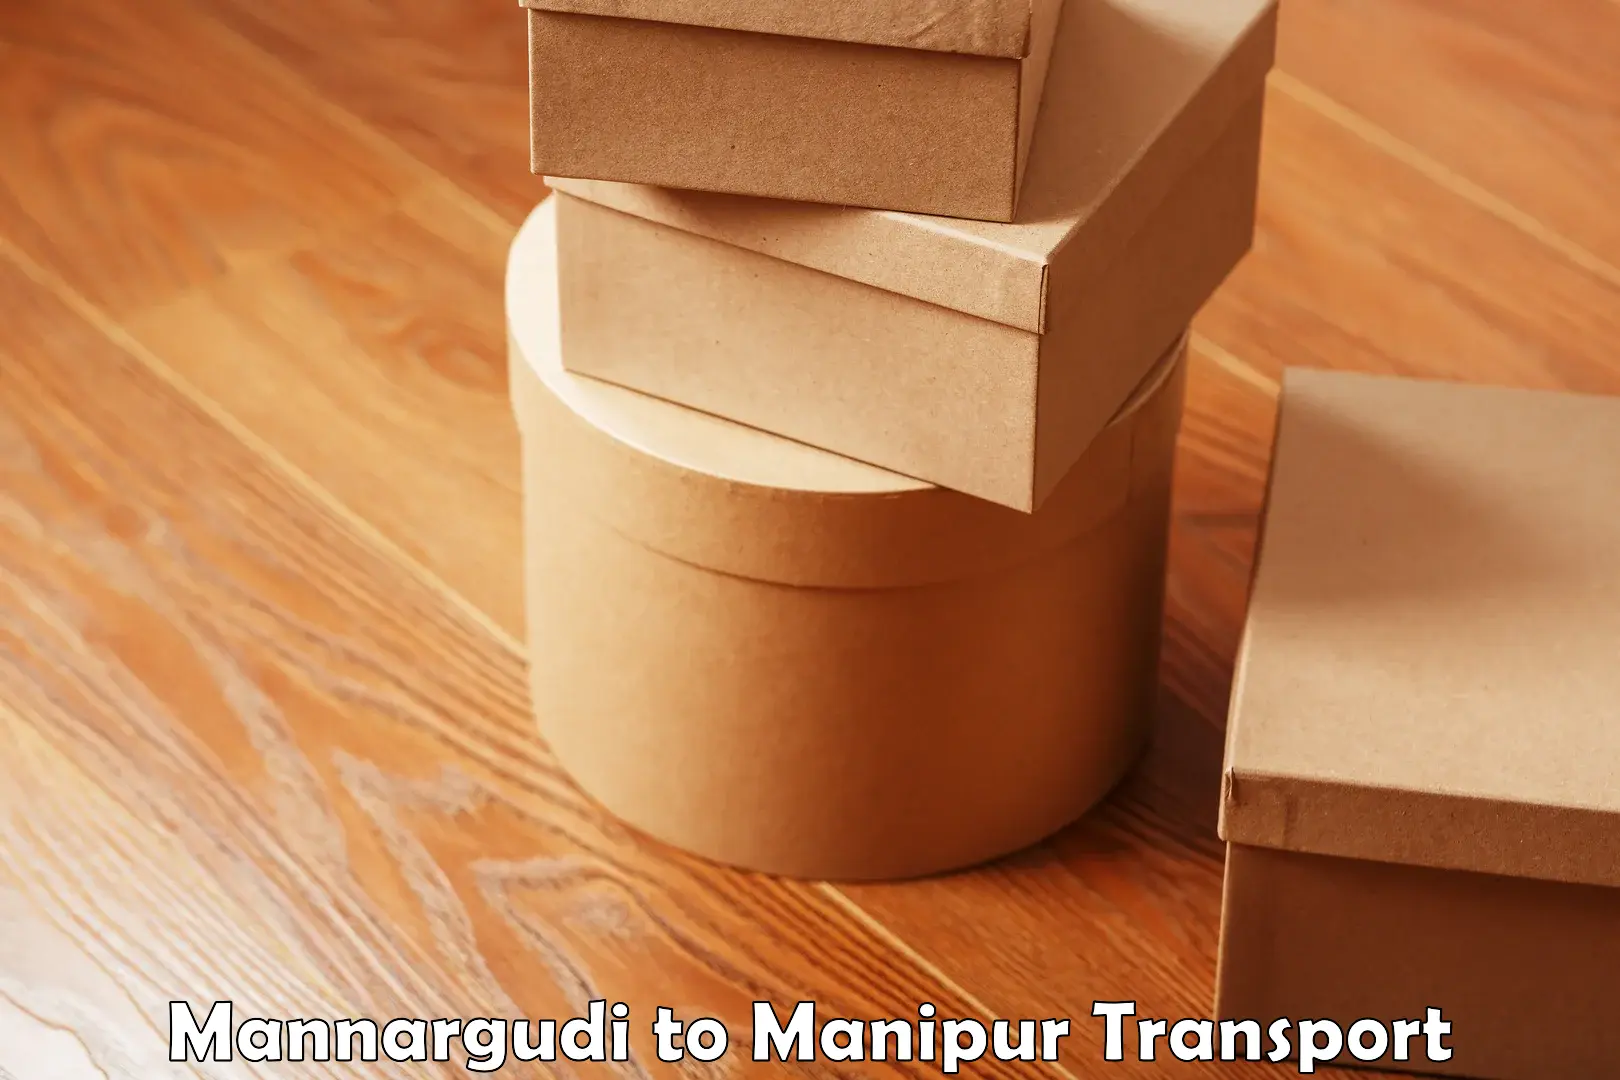 Furniture transport service Mannargudi to Manipur